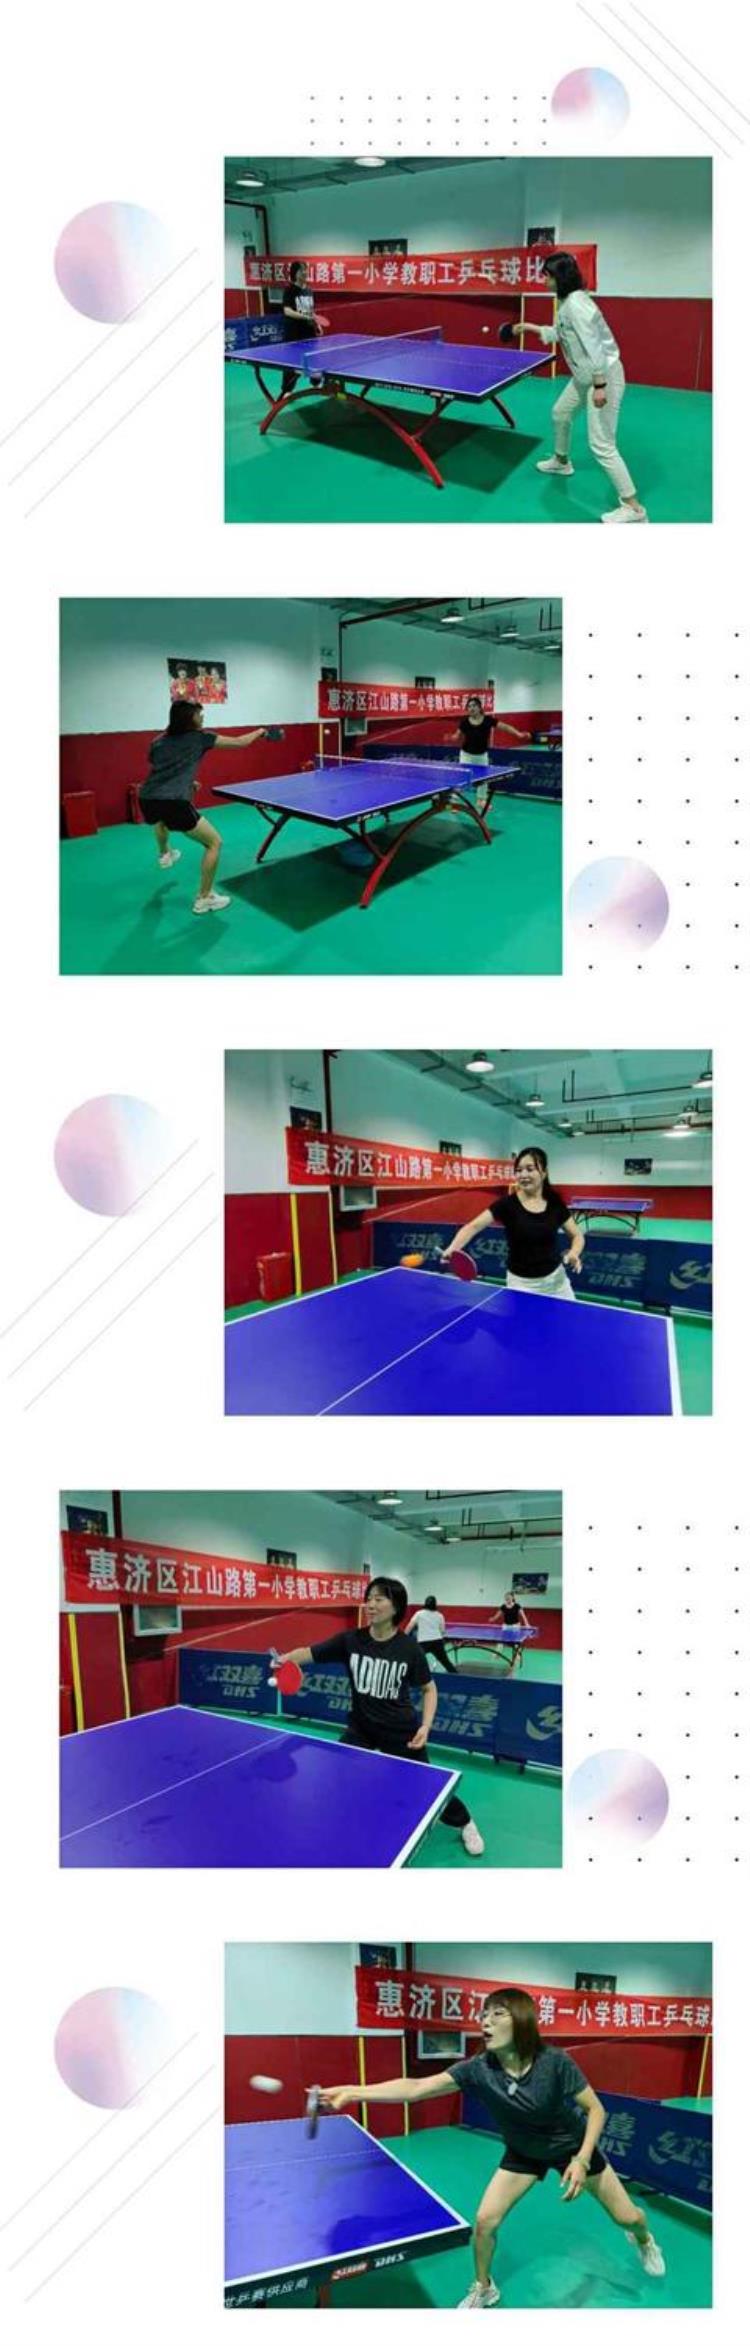 济南市中小学生乒乓球联赛「郑州市惠济区江山路第一小学举行教职工乒乓球比赛活动」